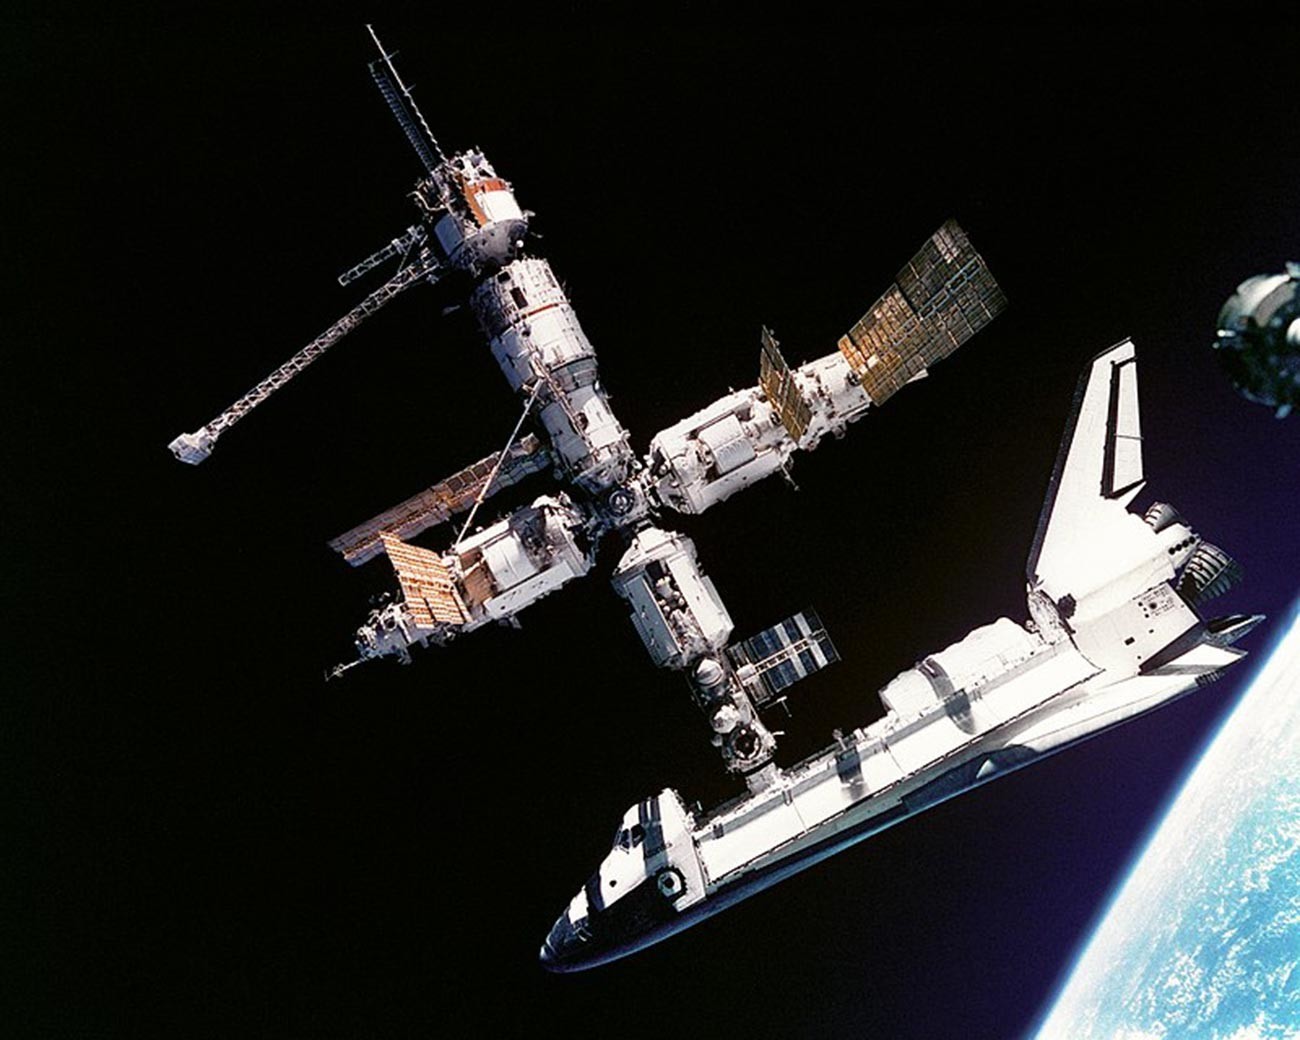 Imagem do ônibus espacial Atlantis ainda conectado à Estação Espacial Mir foi feita pela tripulação do MIR-19 em 4 de julho de 1995